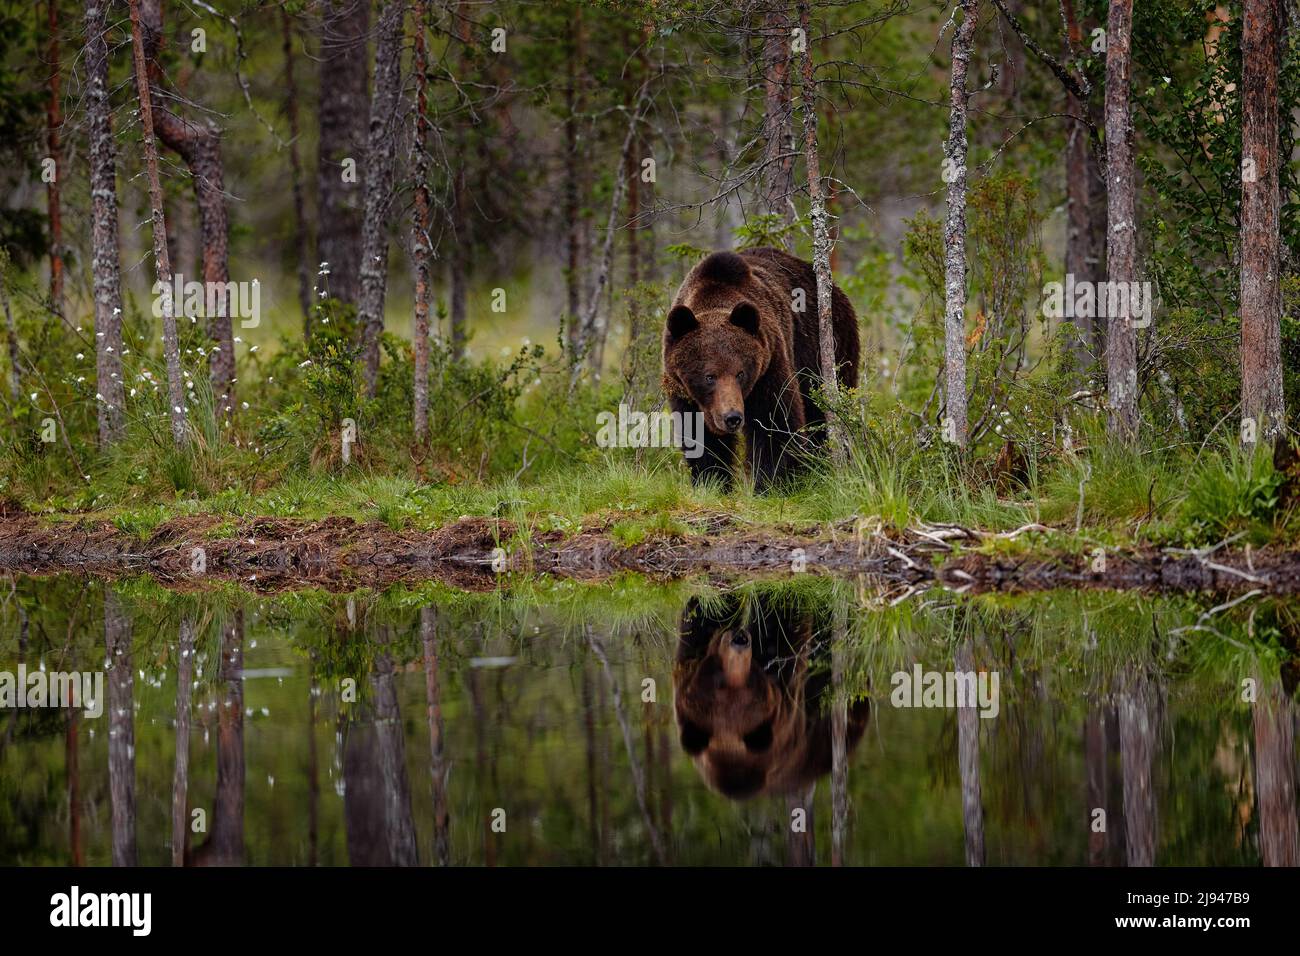 Im Sommer Wildtiere. Bär steht, setzt sich auf seine Hinterbeine, einen Wald mit Baumwollgras. Gefährliches Tier in der Natur Wald und Wiese Lebensraum. Wild Stockfoto